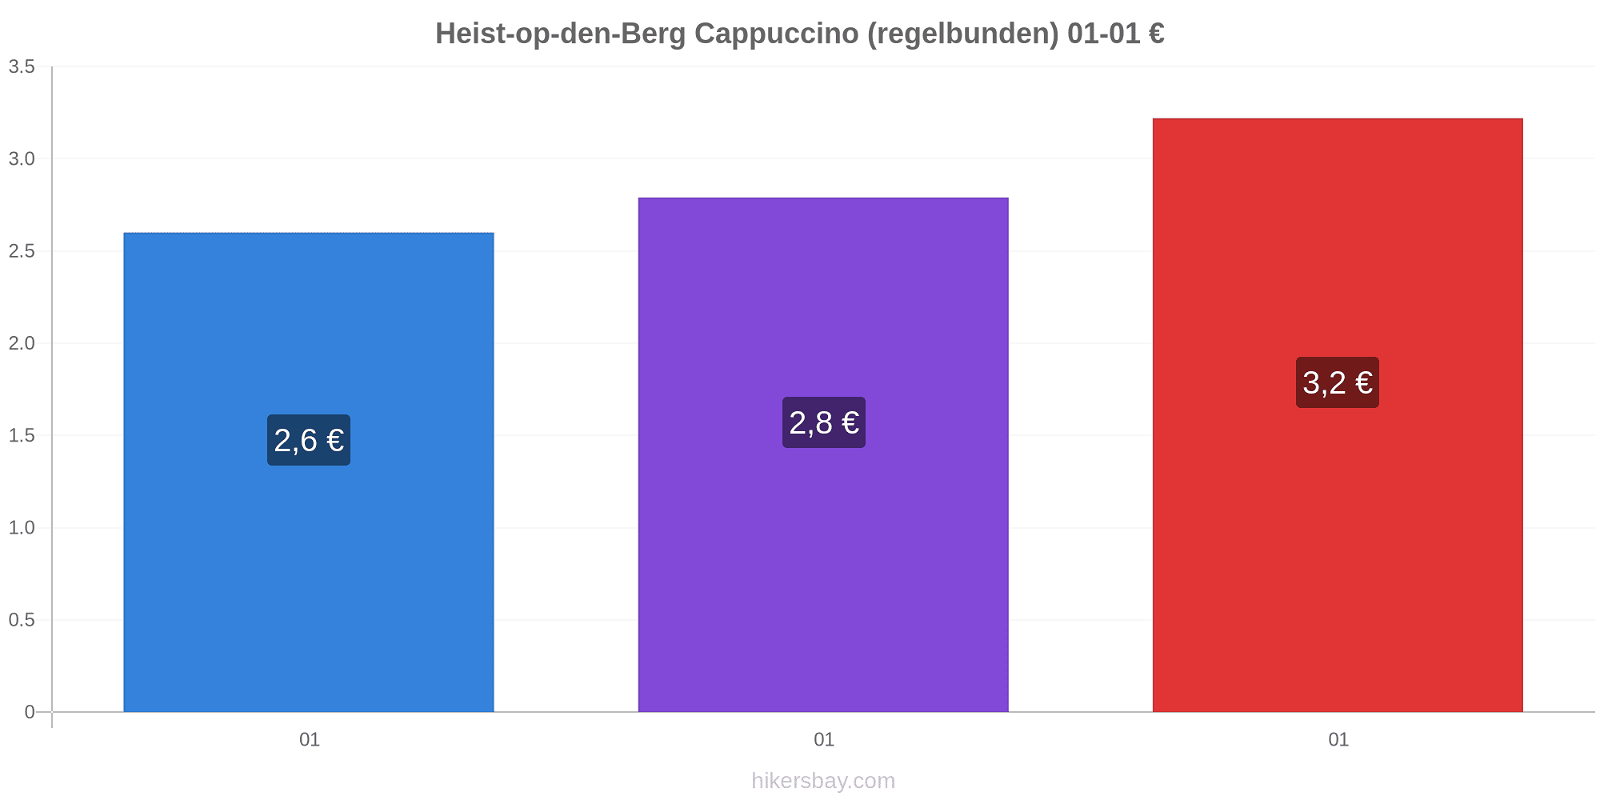 Heist-op-den-Berg prisförändringar Cappuccino (regelbunden) hikersbay.com